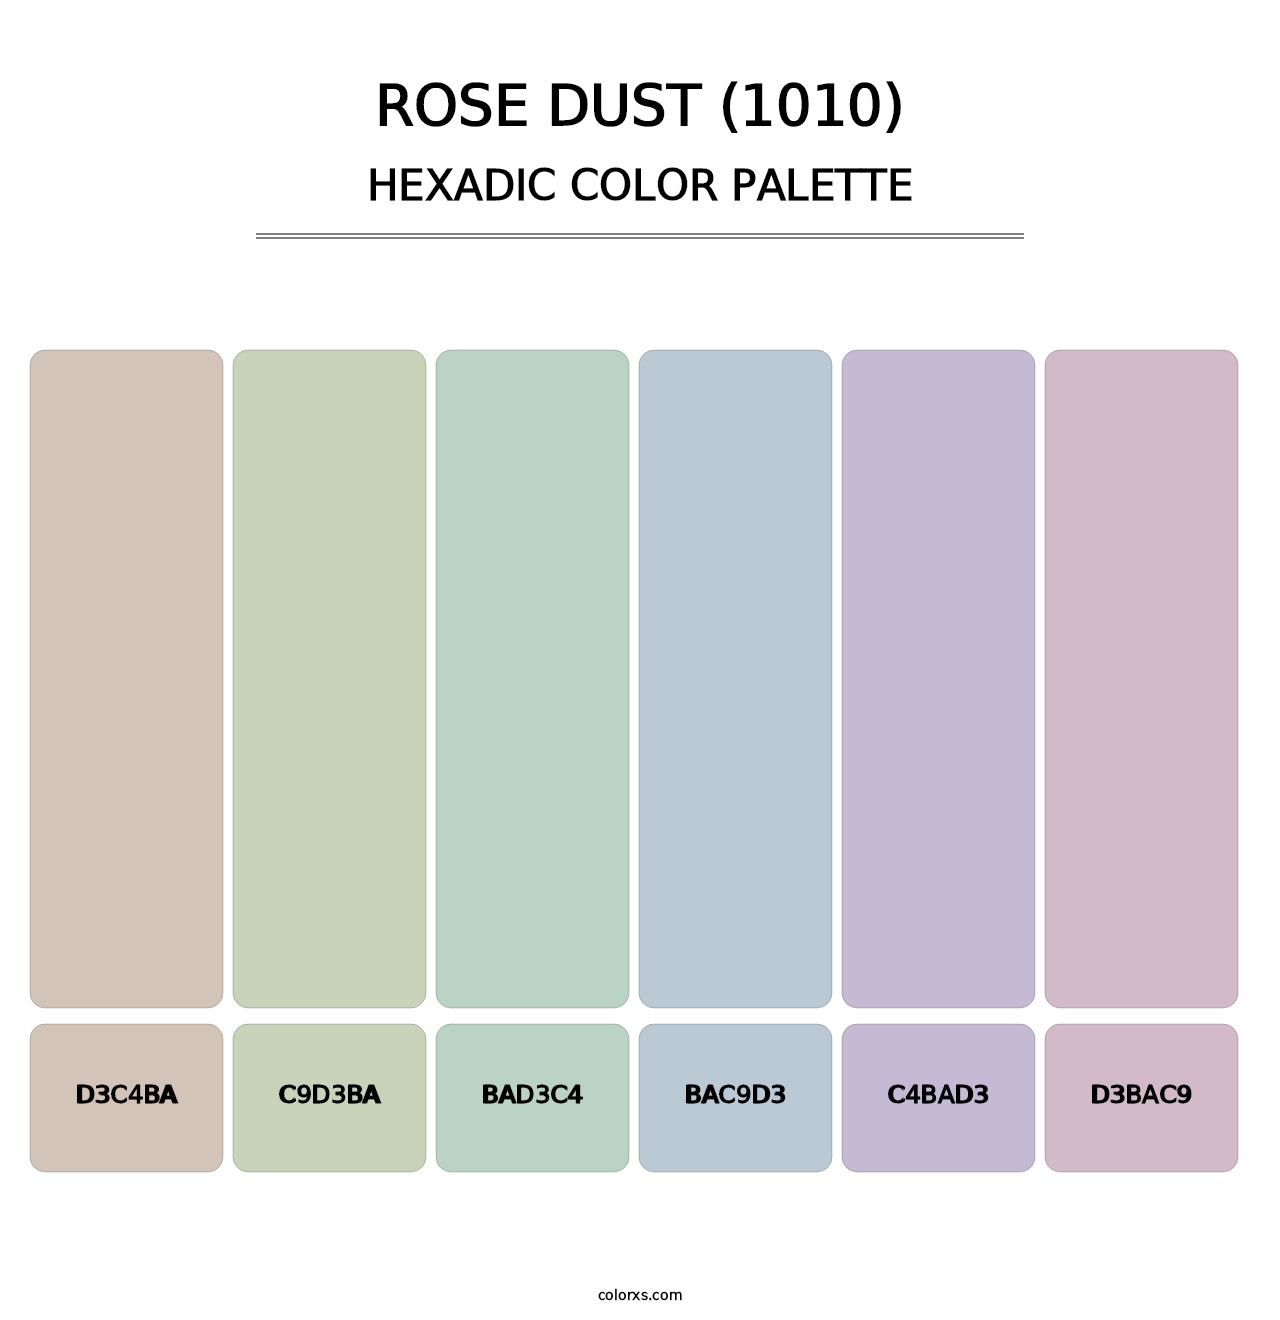 Rose Dust (1010) - Hexadic Color Palette